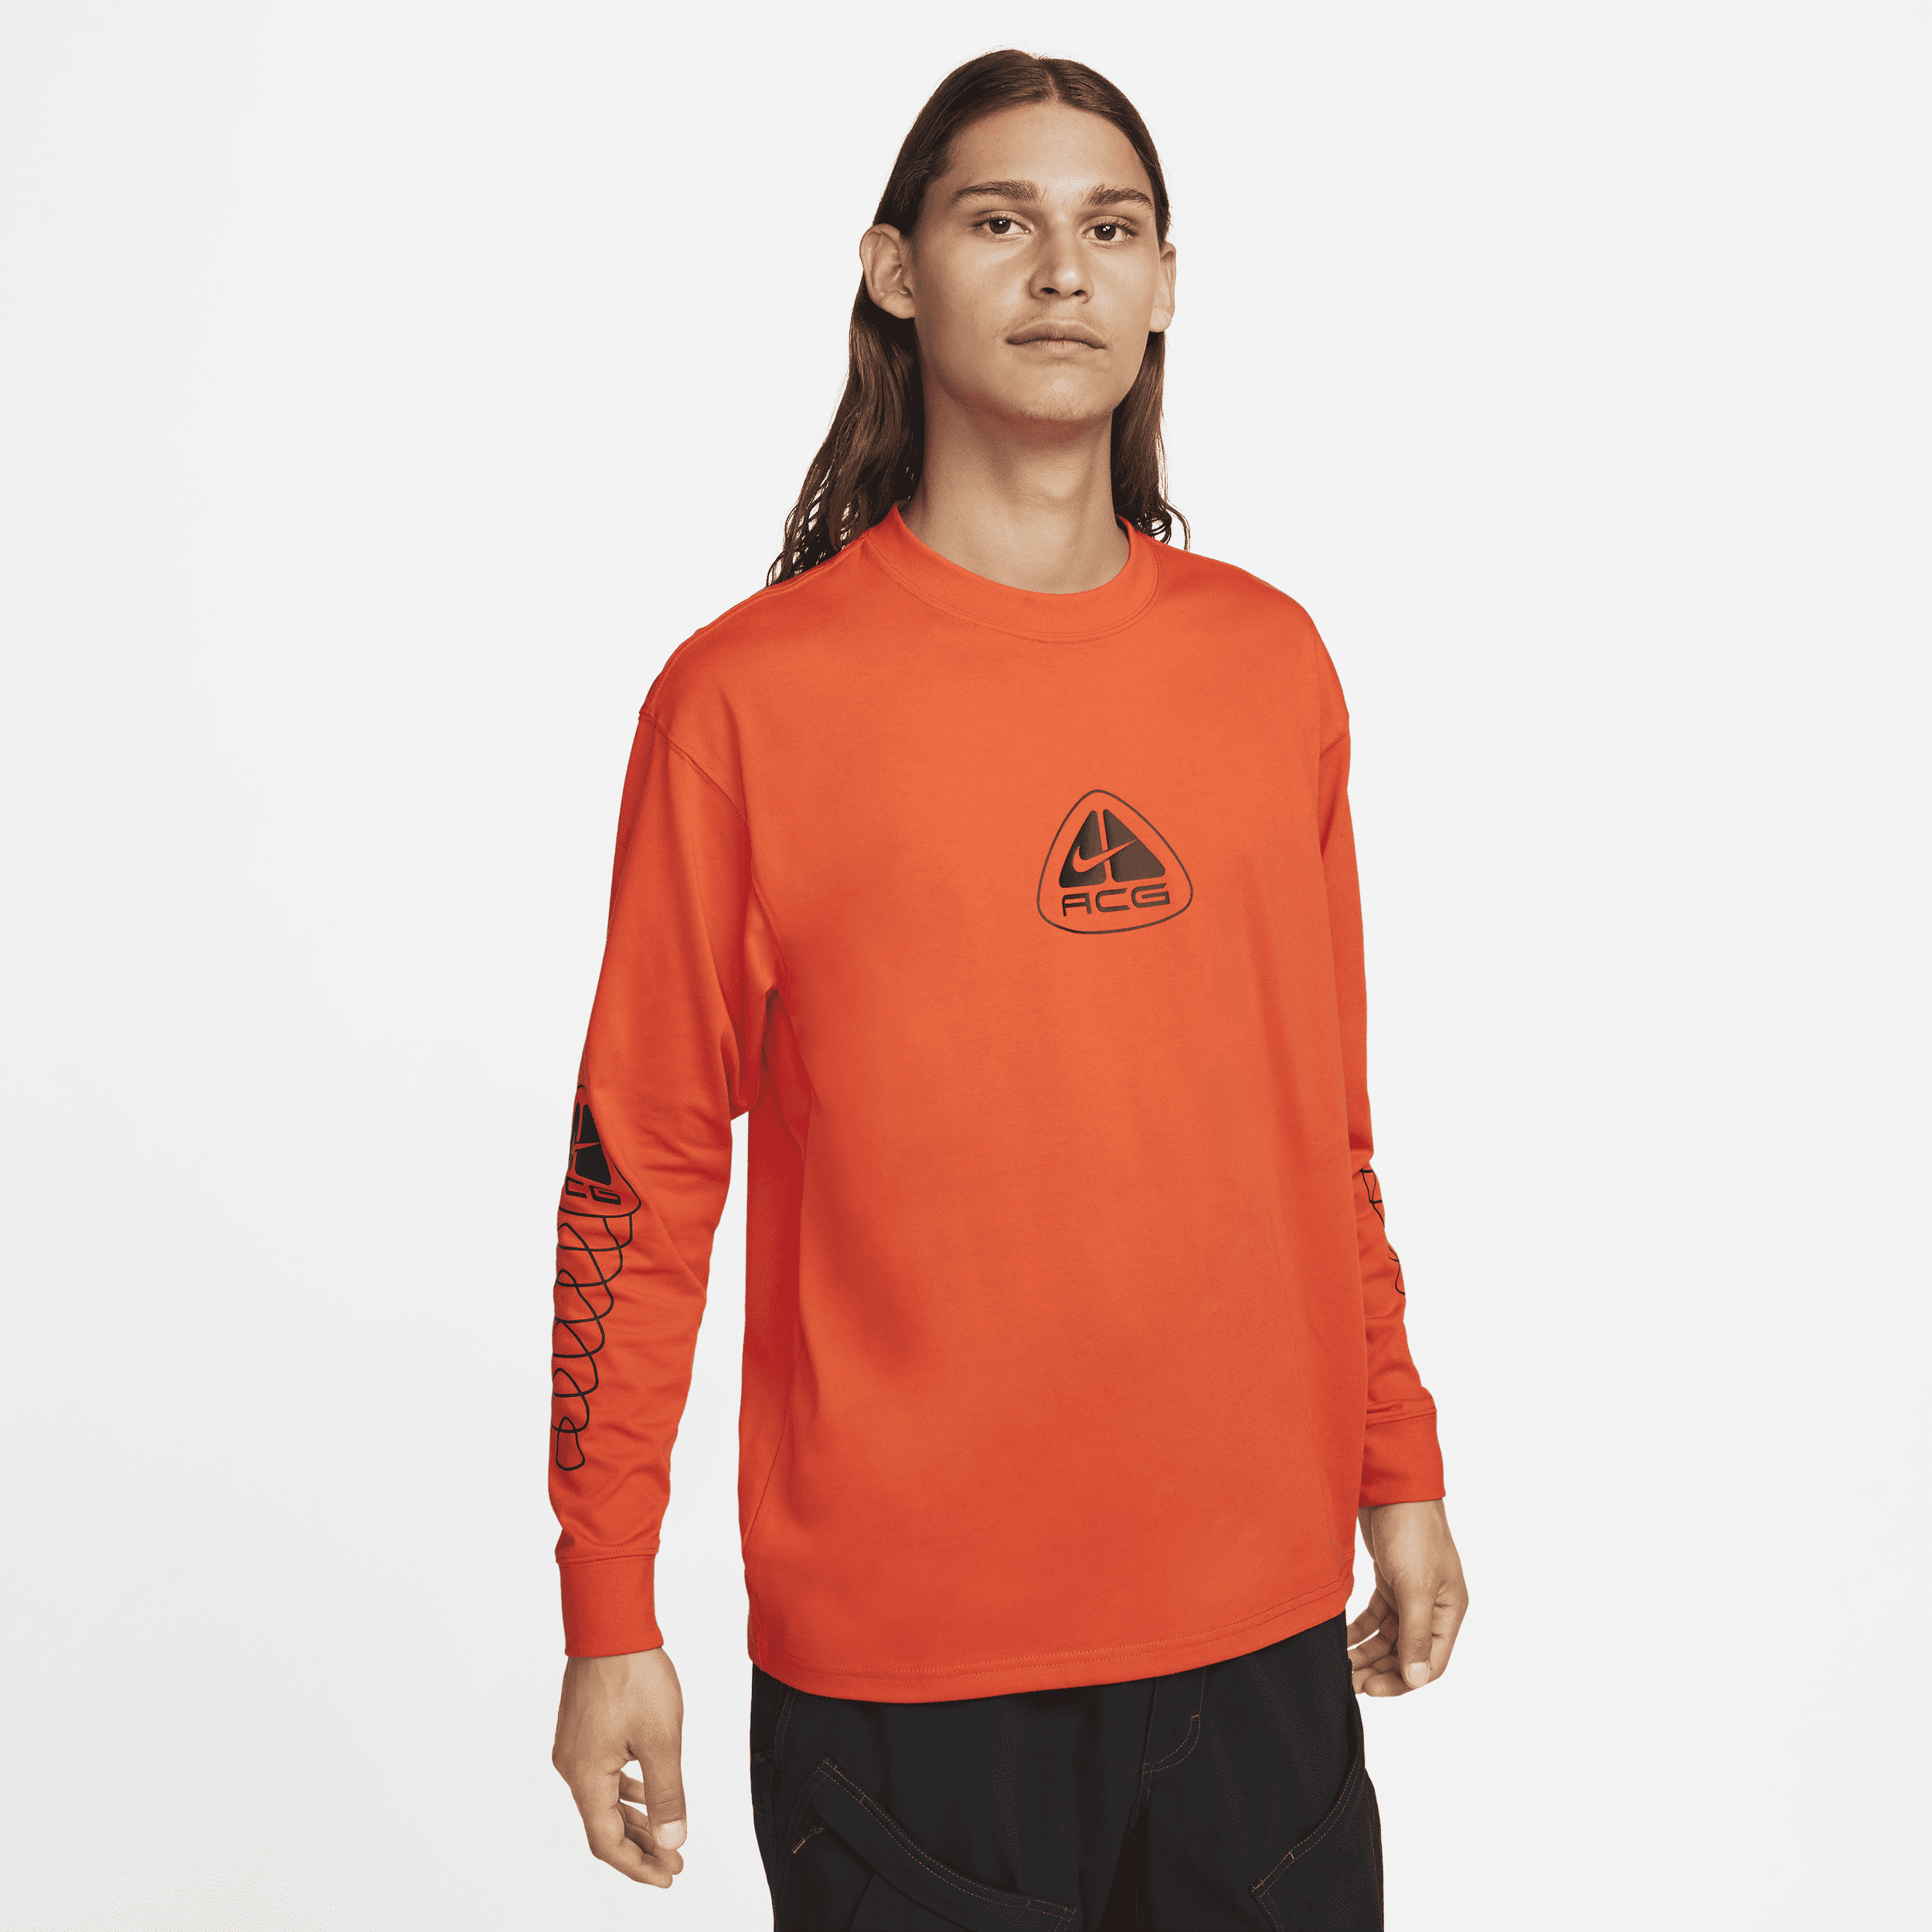 T-shirt a manica lunga Nike ACG - Uomo - Rosso